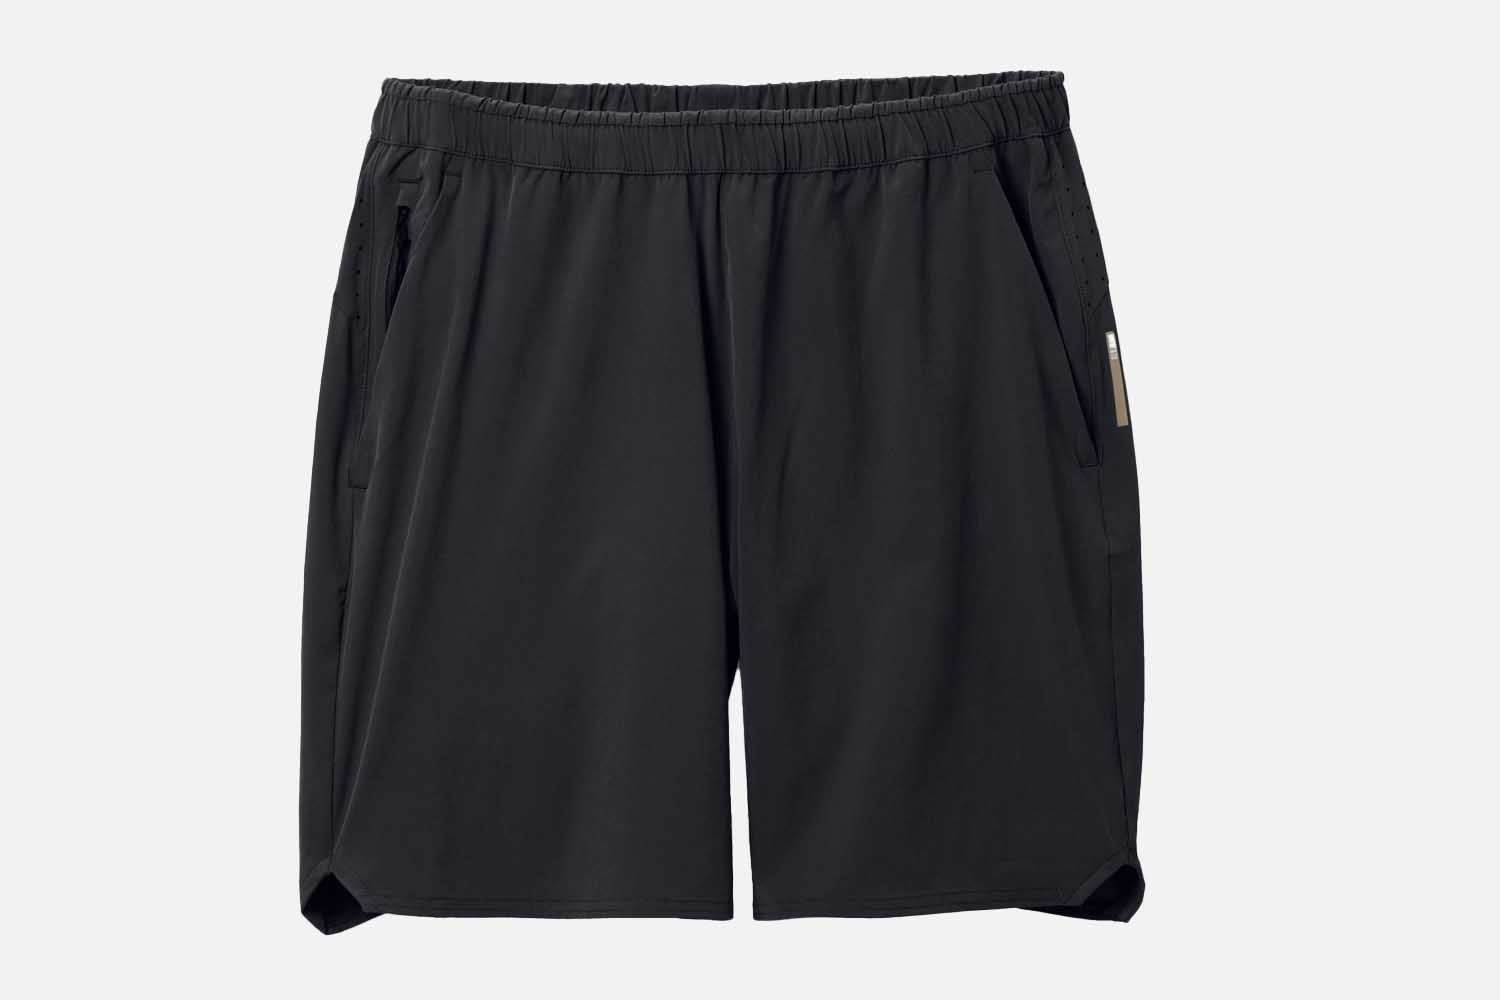 REI Co-op Active Pursuits Shorts – Men’s 7″ Inseam